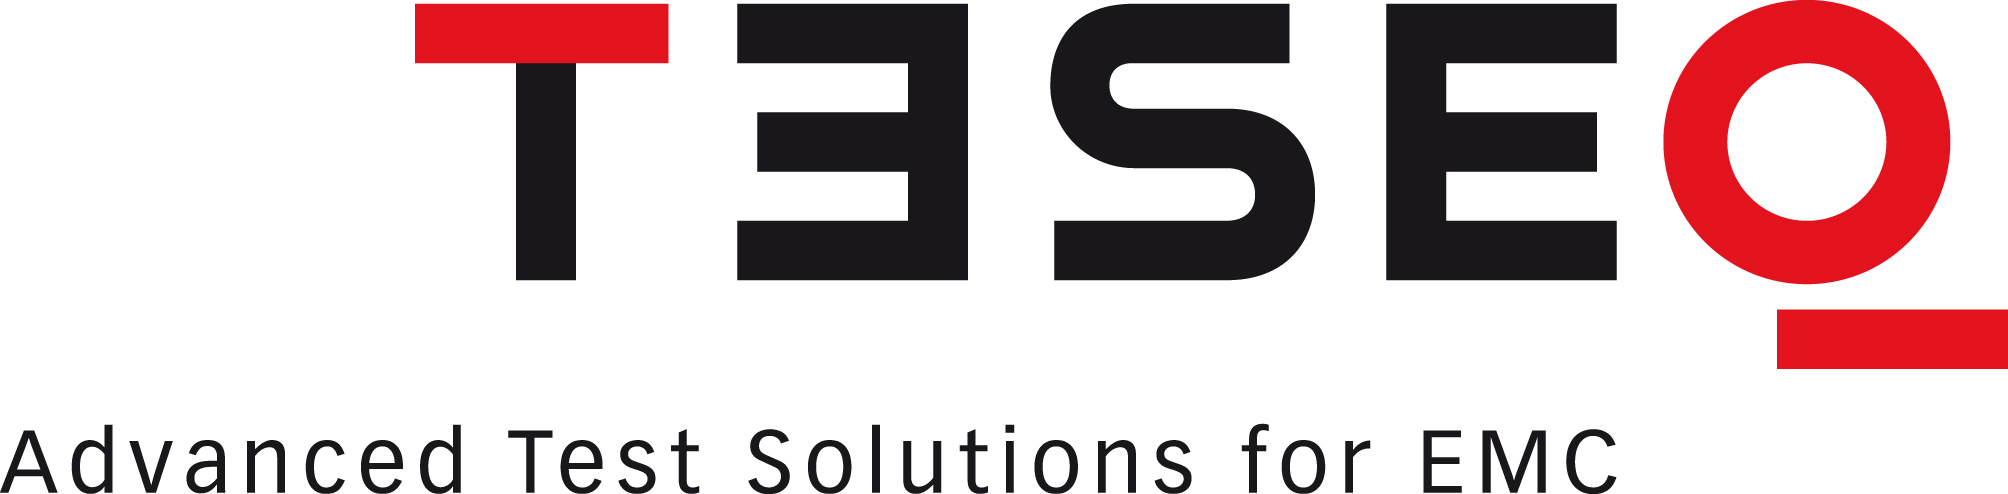 Teseq_Logos